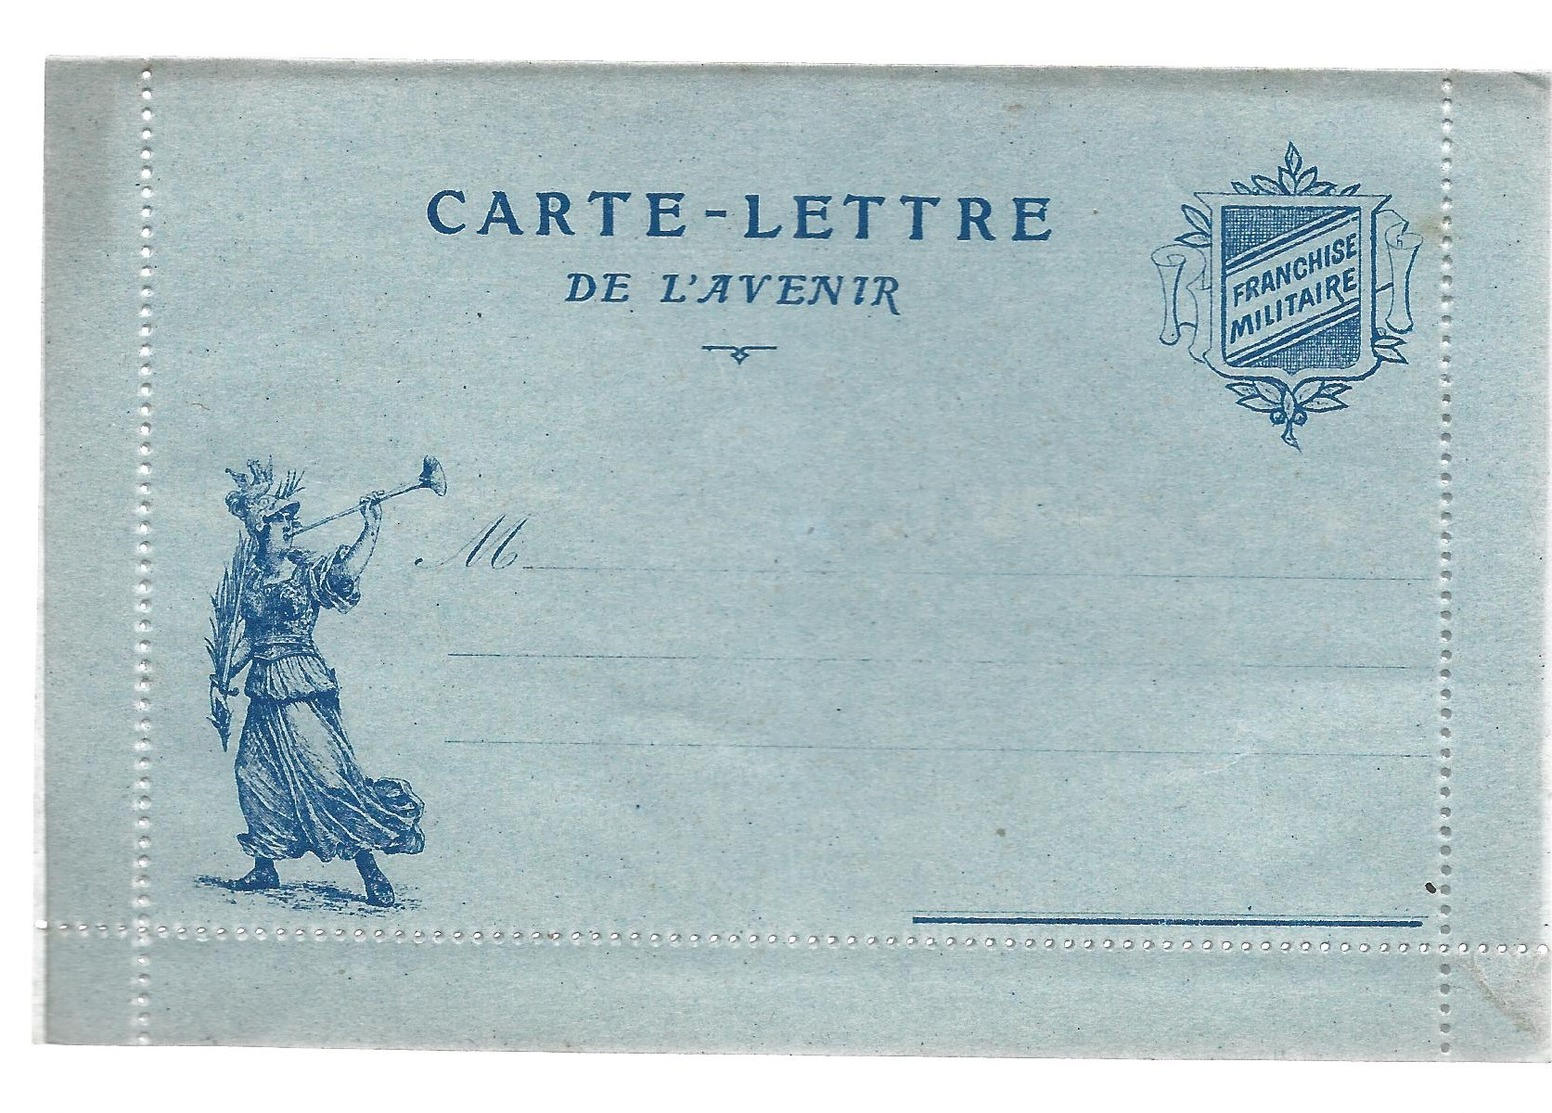 CARTE EN FRANCHISE MILITAIRE  - CARTE LETTRE DE L'AVENIR  - NON ECRITE - TRES BON ETAT - Briefe U. Dokumente